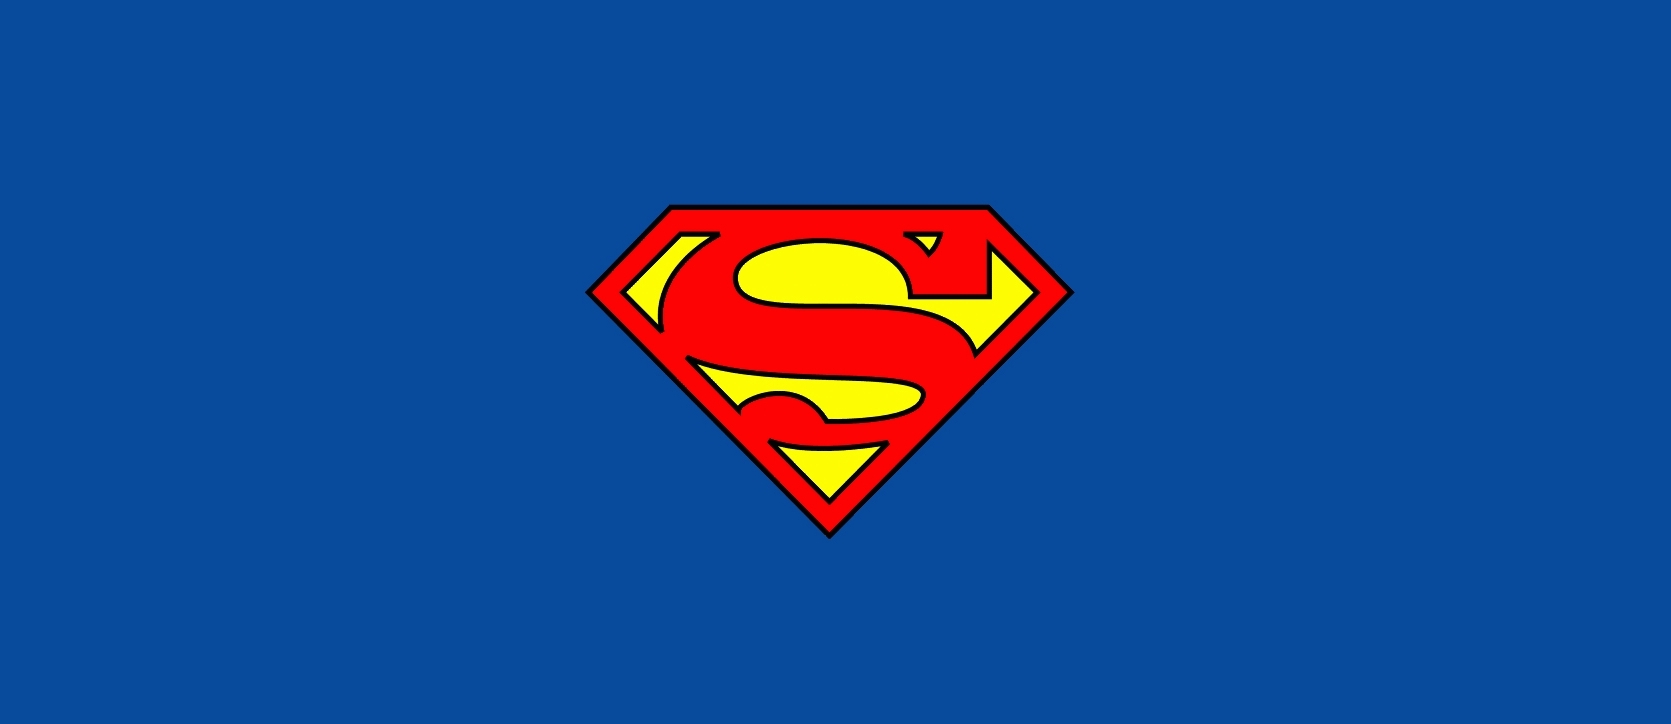 superman logo wallpaper,übermensch,erfundener charakter,superheld,gerechtigkeitsliga,symbol